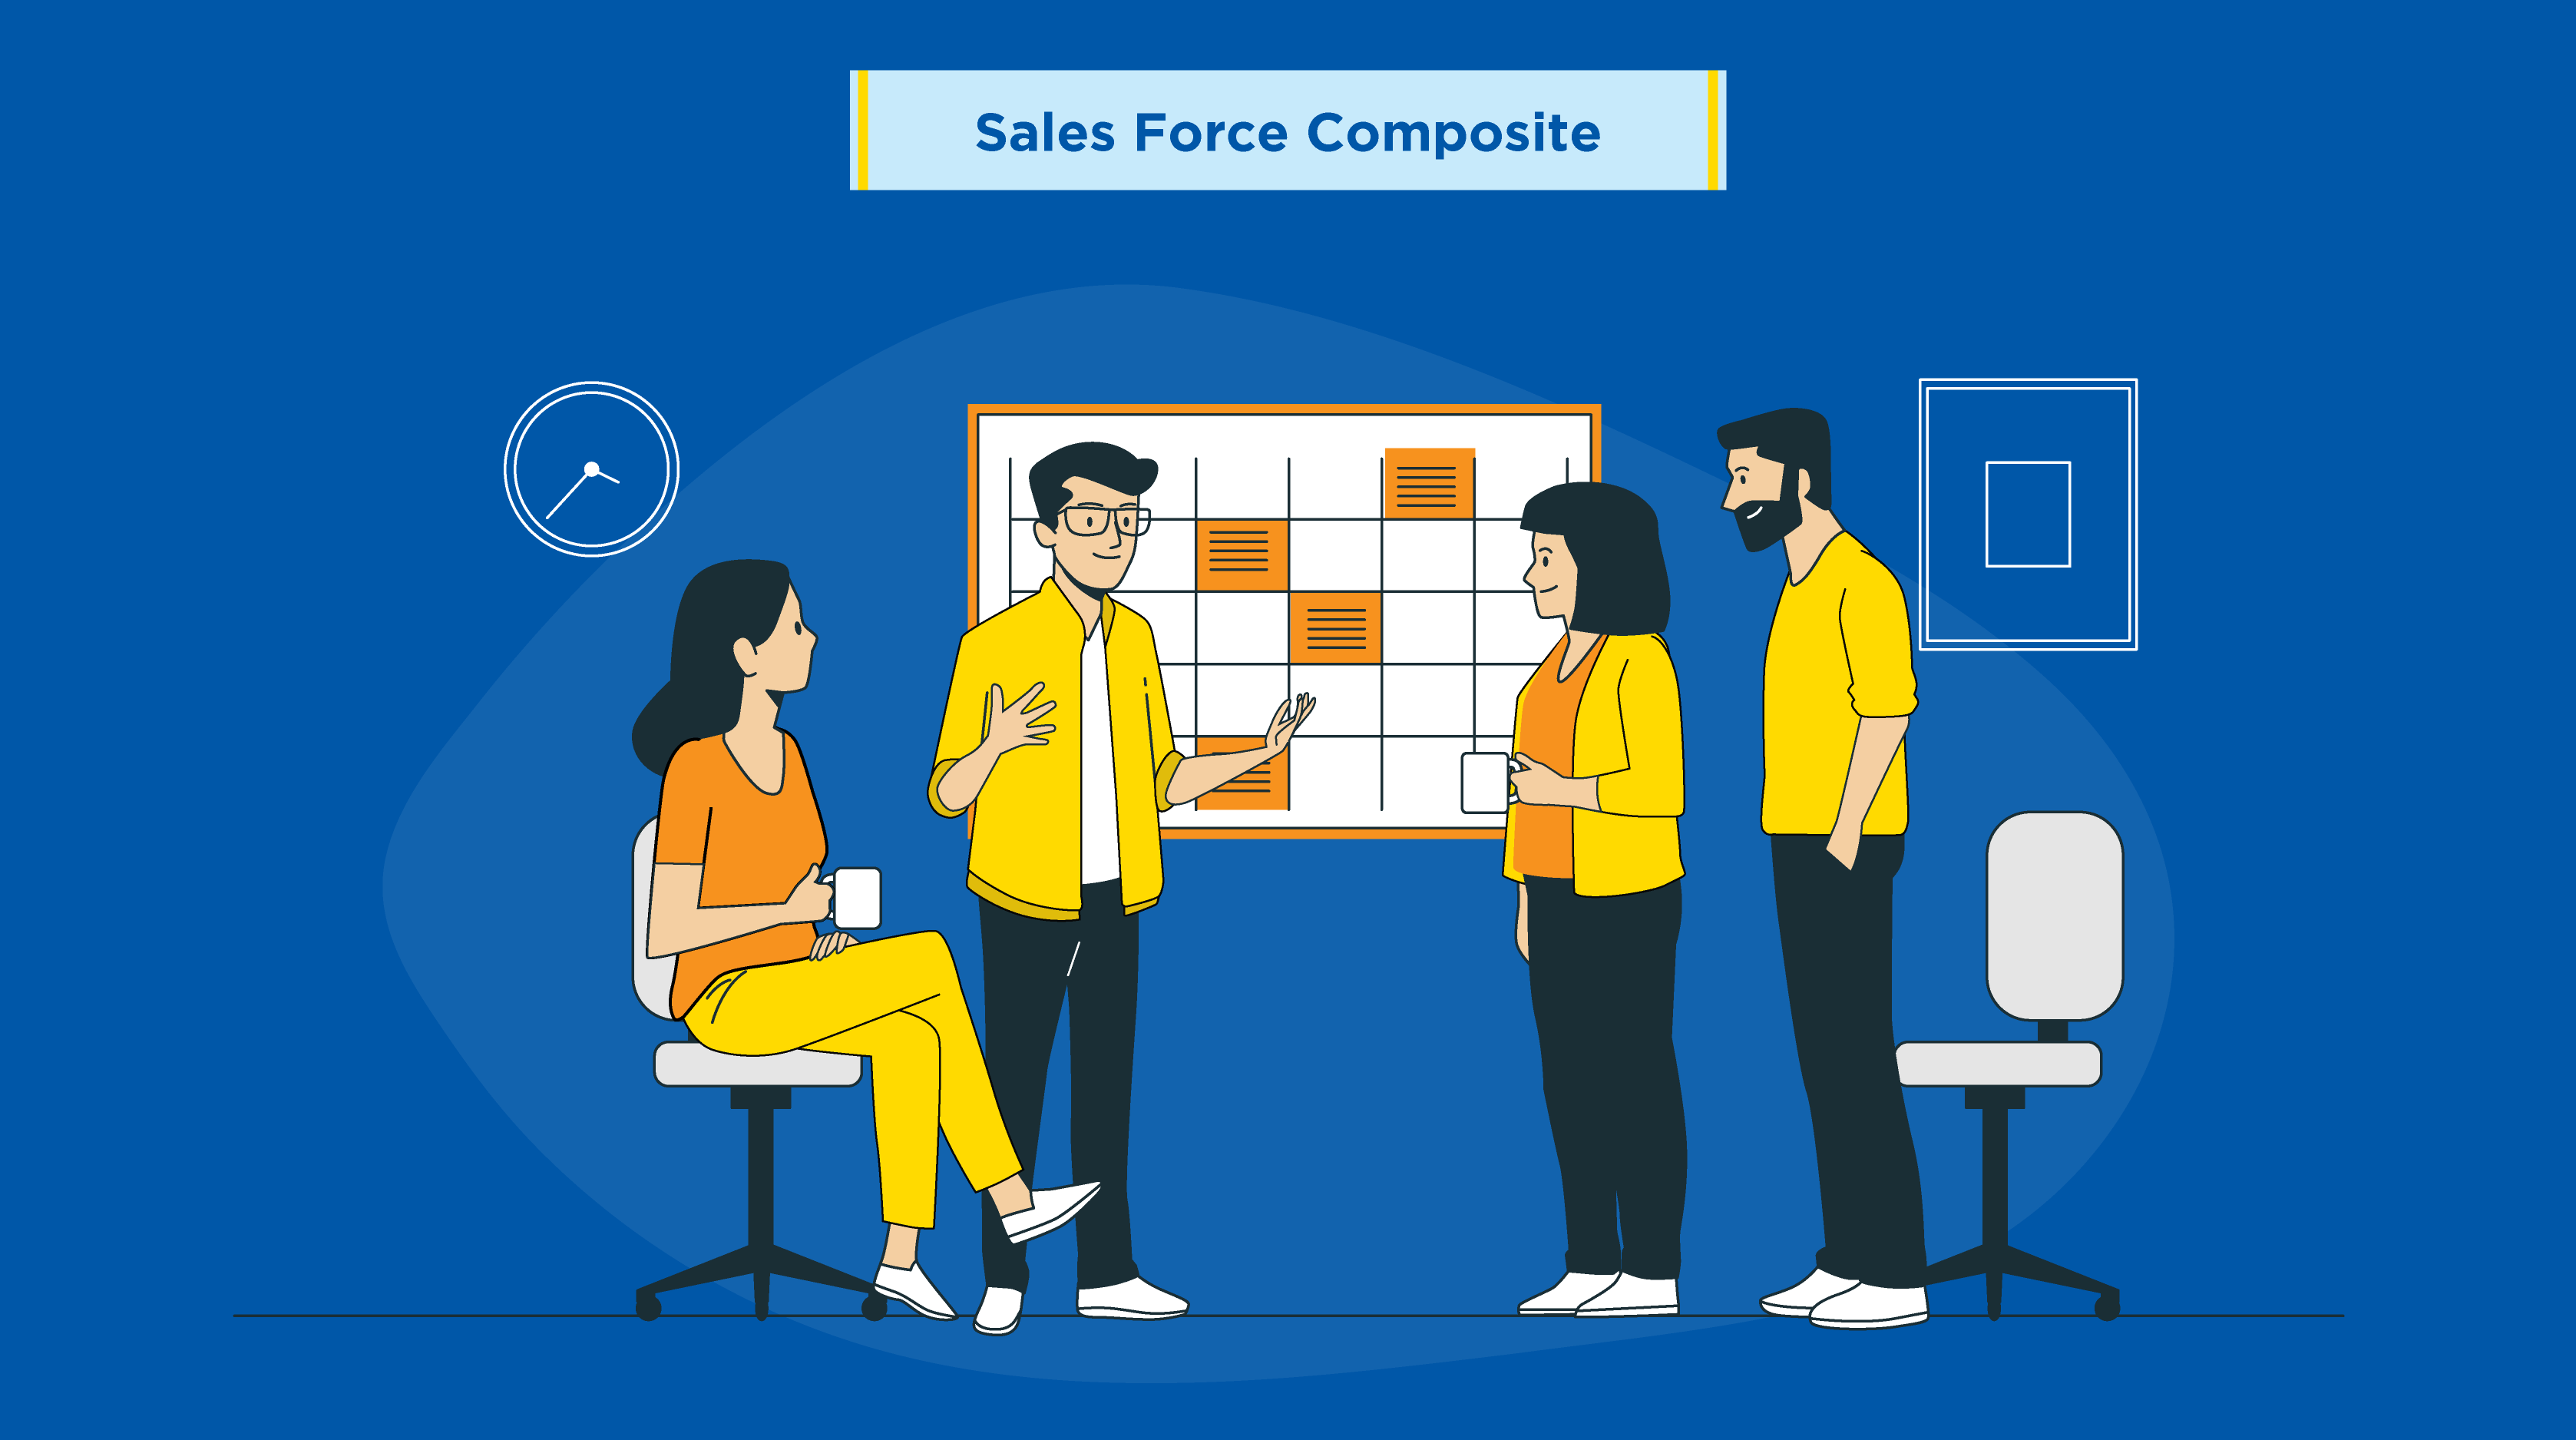 Sales Force Composite